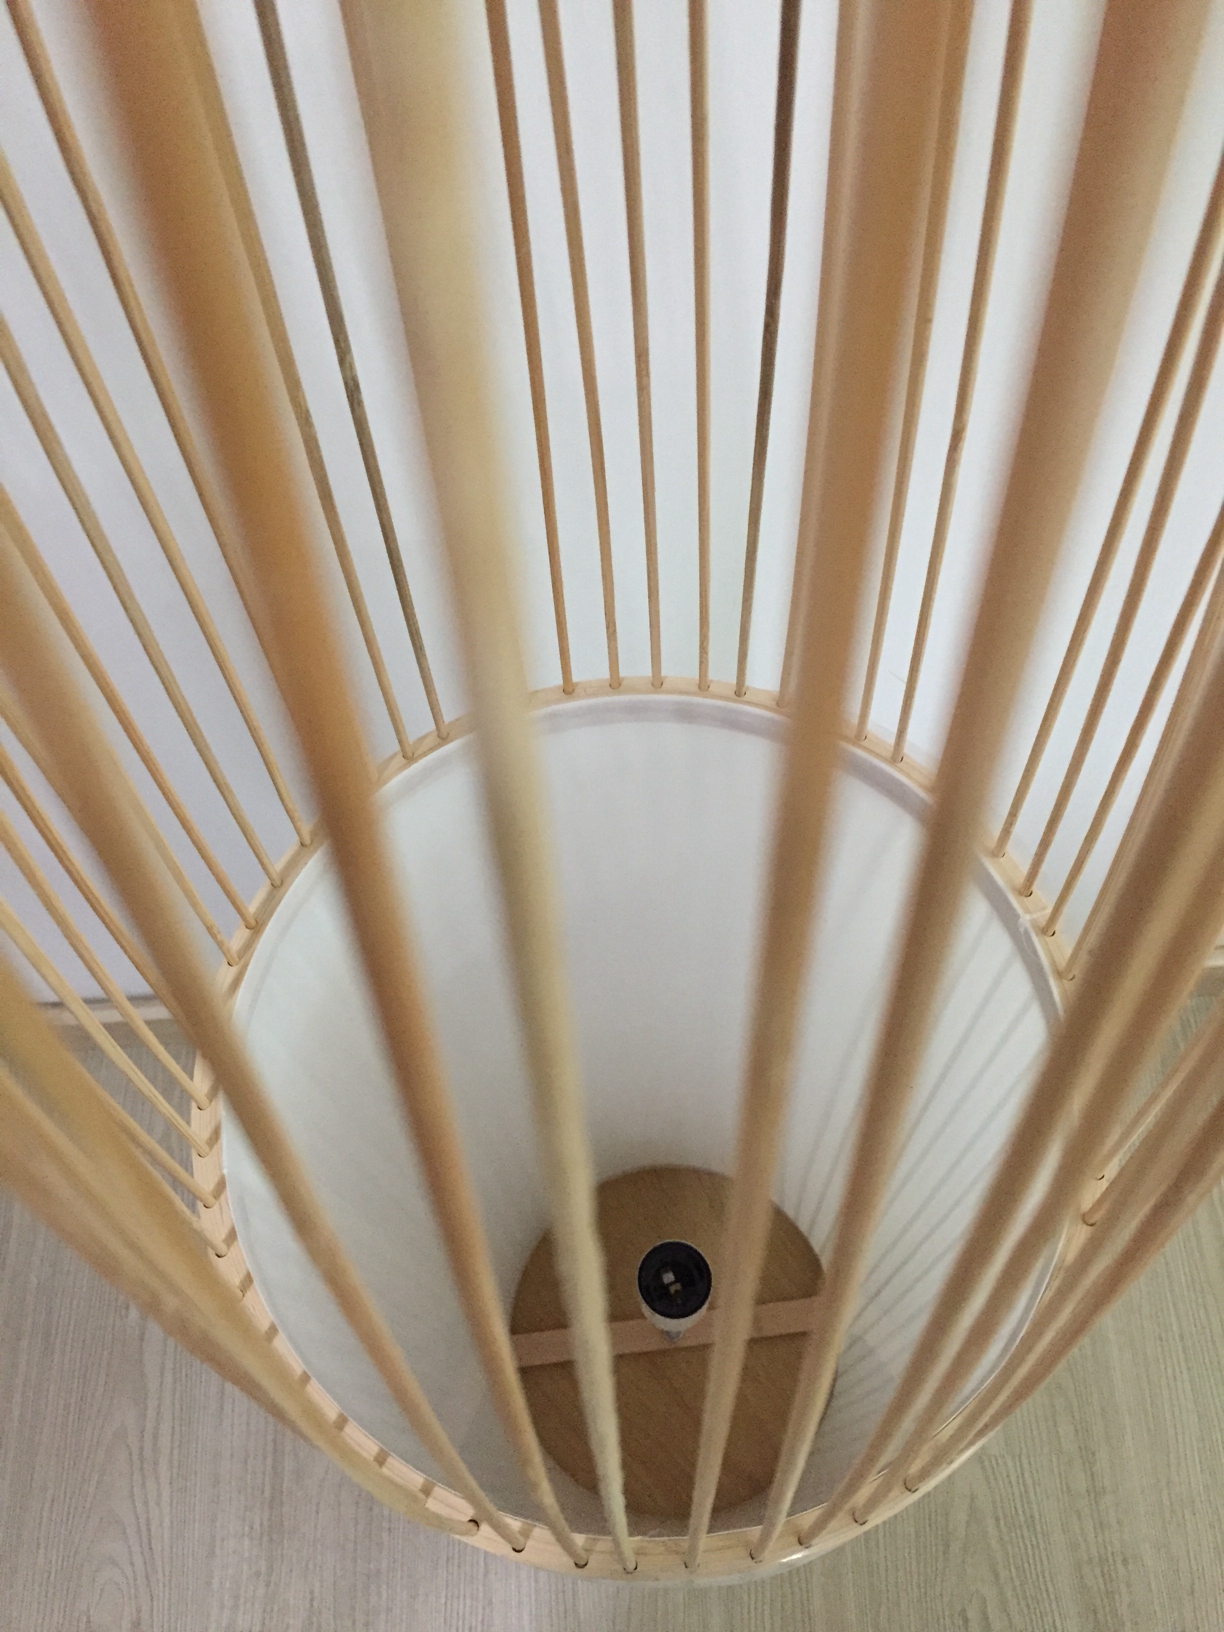 Modern Decoration Bamboo Floor Lighting (KAPLD-0141)